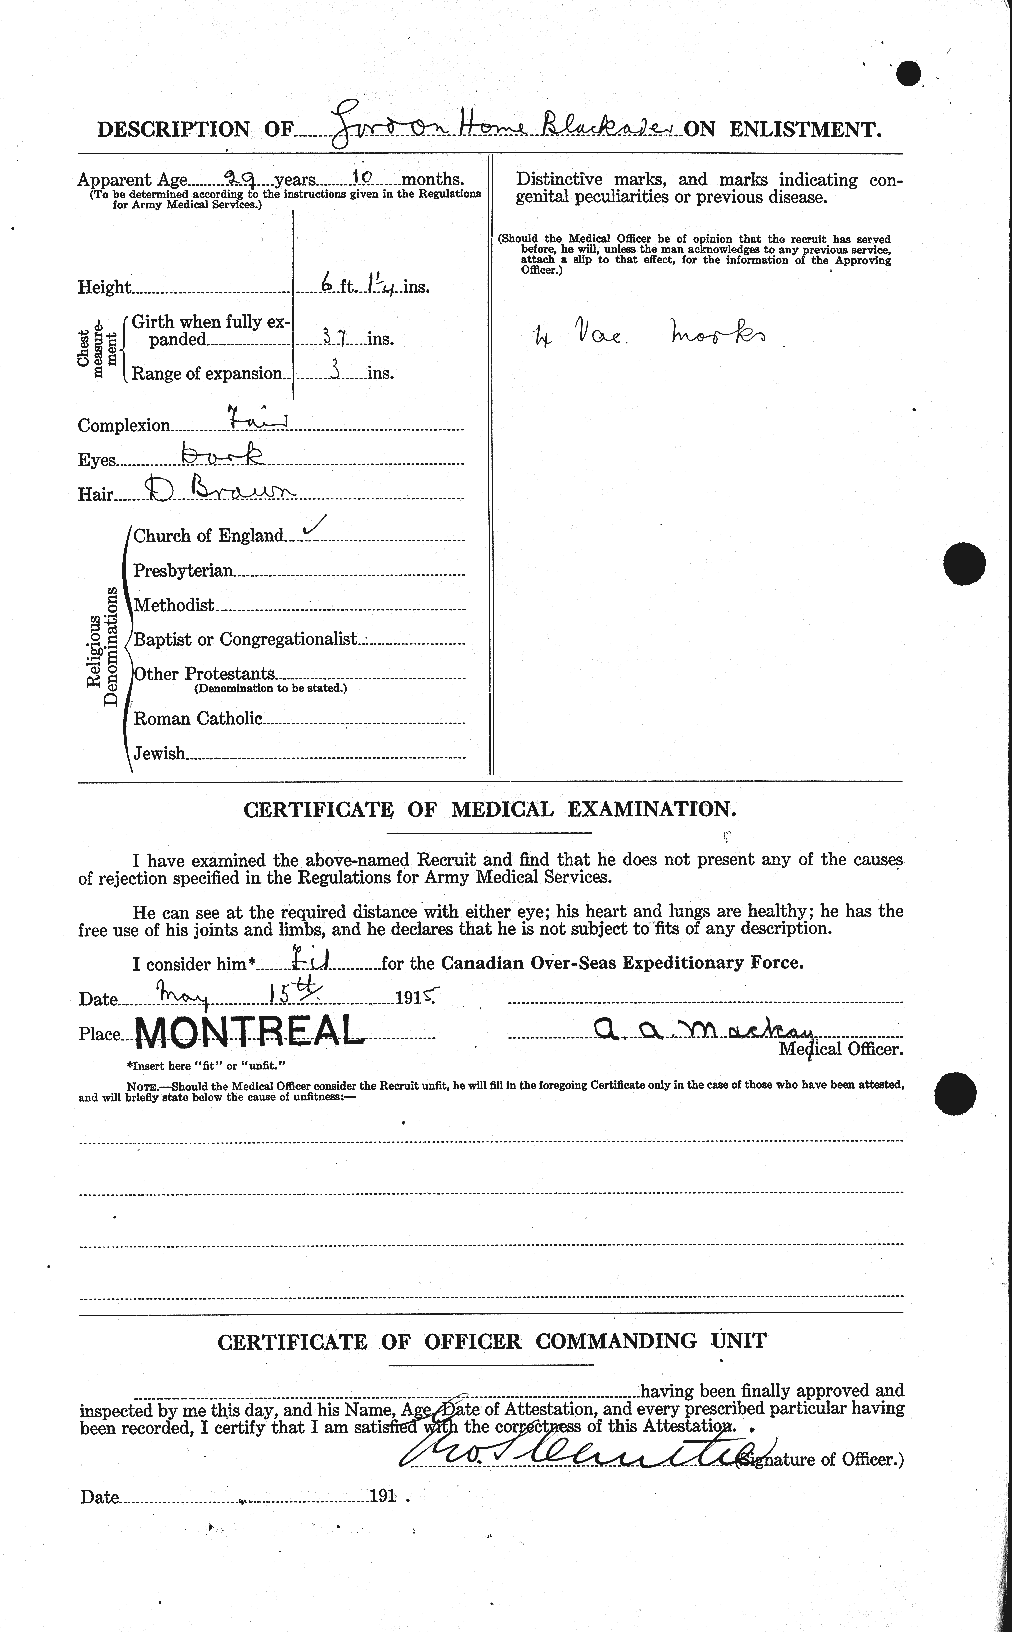 Dossiers du Personnel de la Première Guerre mondiale - CEC 247728b